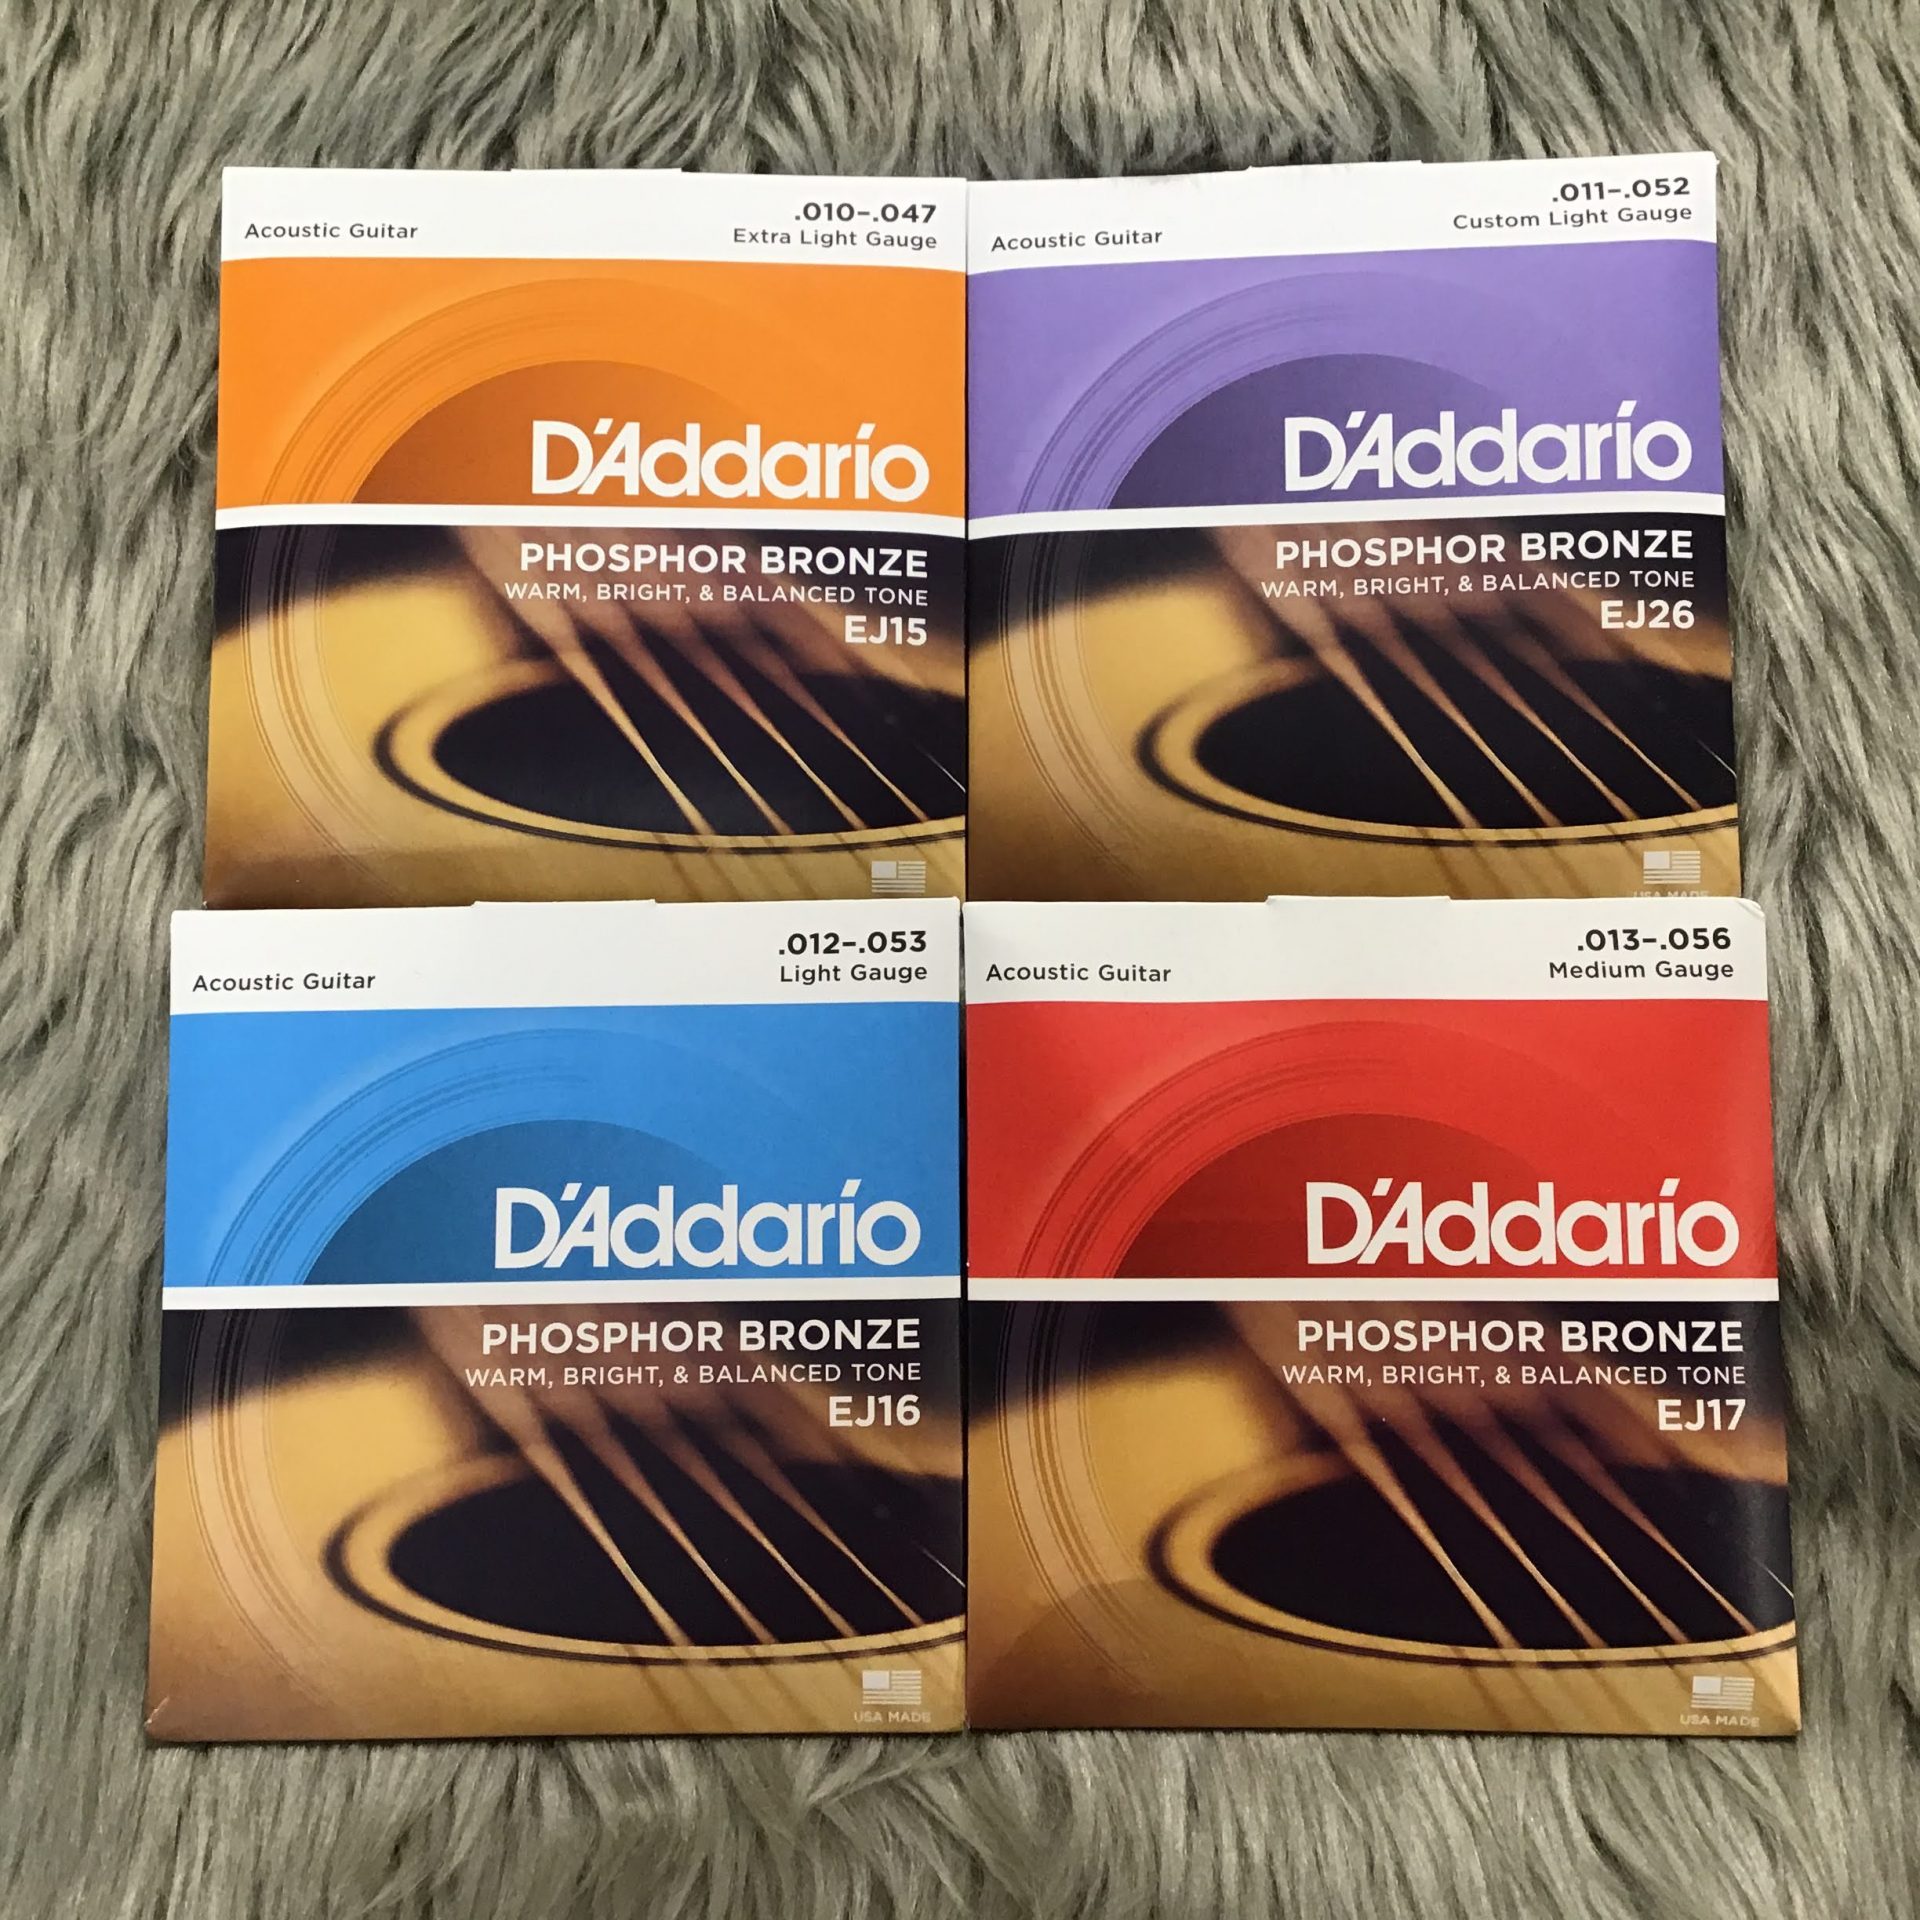 D'Addario ダダリオ アコースティックギター弦 フォスファーブロンズ Extra Light .010-.047 EJ15-3D